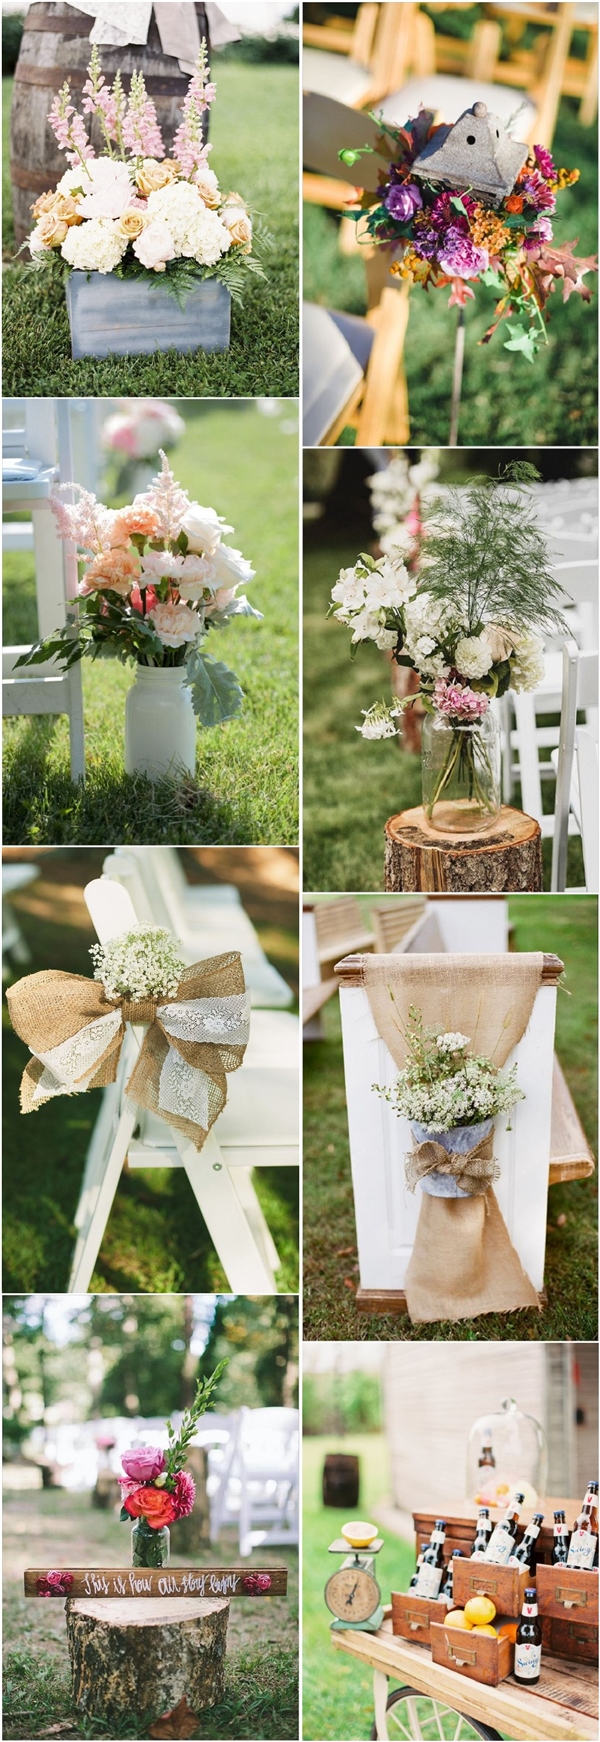 rustic country garden wedding ideas- outdoor backyard wedding decors